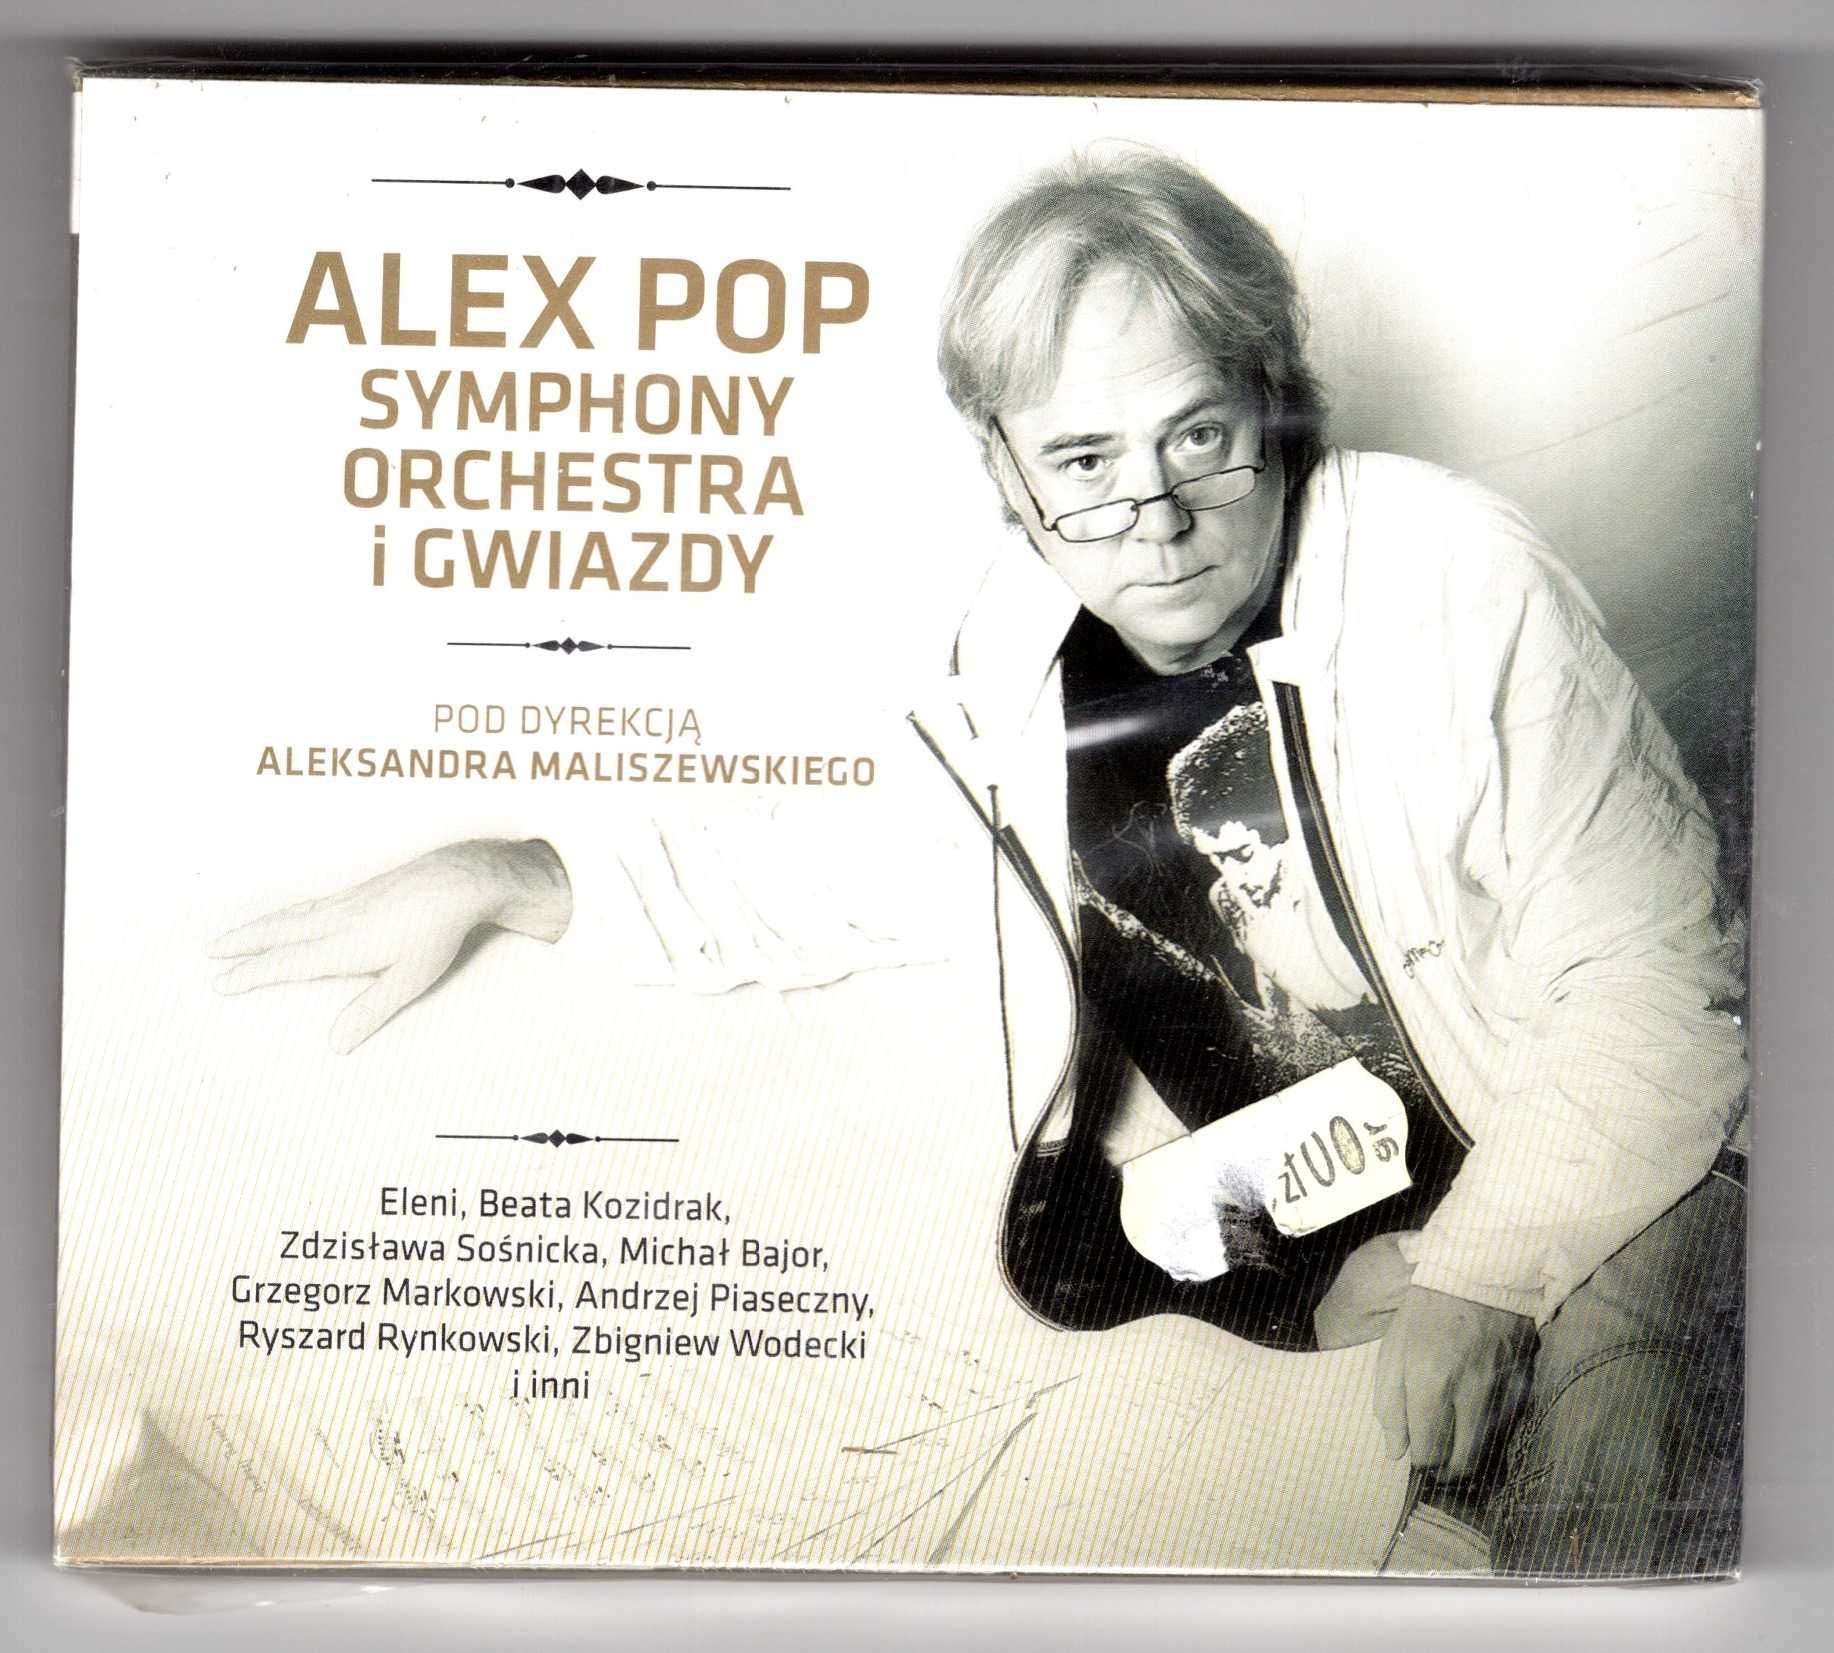 Alex Pop Symphony Orchestra I Gwiazdy (CD)